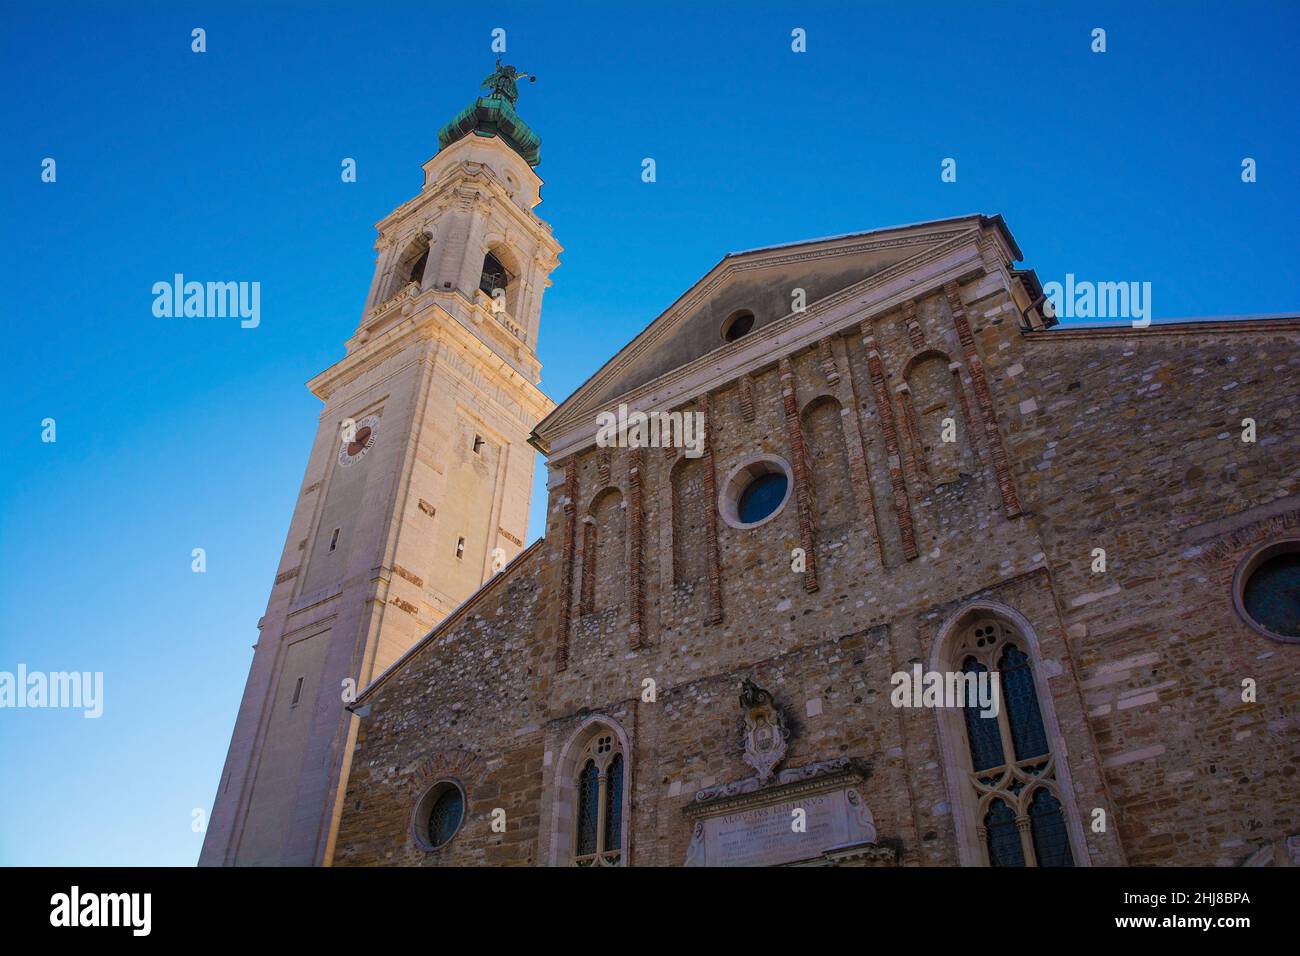 The historic cathedral in NE Italian city of Belluno, Veneto region. This 18th century Baroque duomo is known as Basilica Cattedrale di San Martino Stock Photo